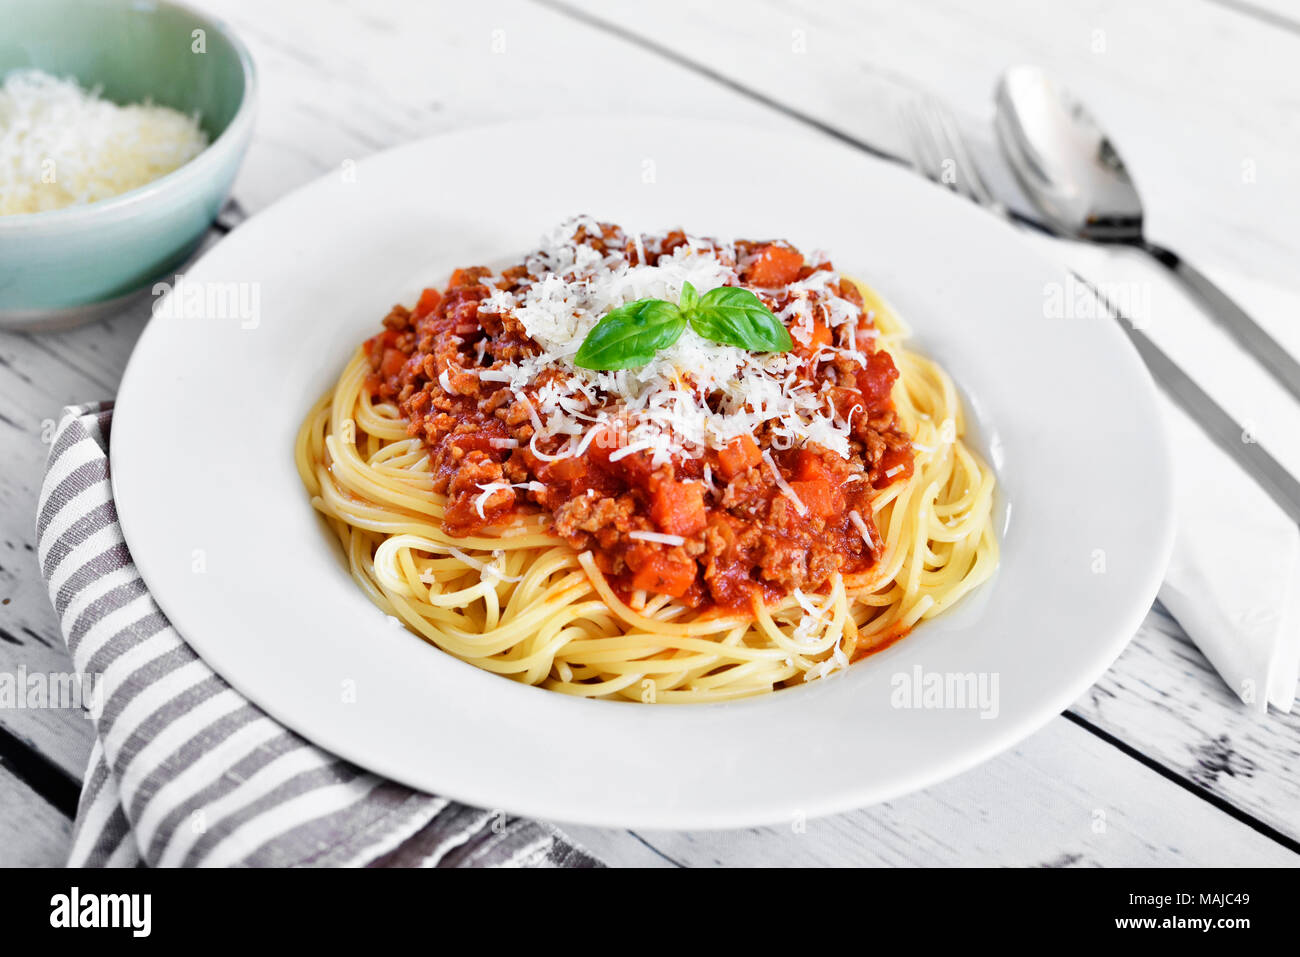 Deliziosa pasta pasto, spaghetti alla bolognese su una piastra bianca. Piatto di pasta, cibo tradizionale italiano con formaggio parmigiano, le carni macinate e le foglie di basilico. Foto Stock